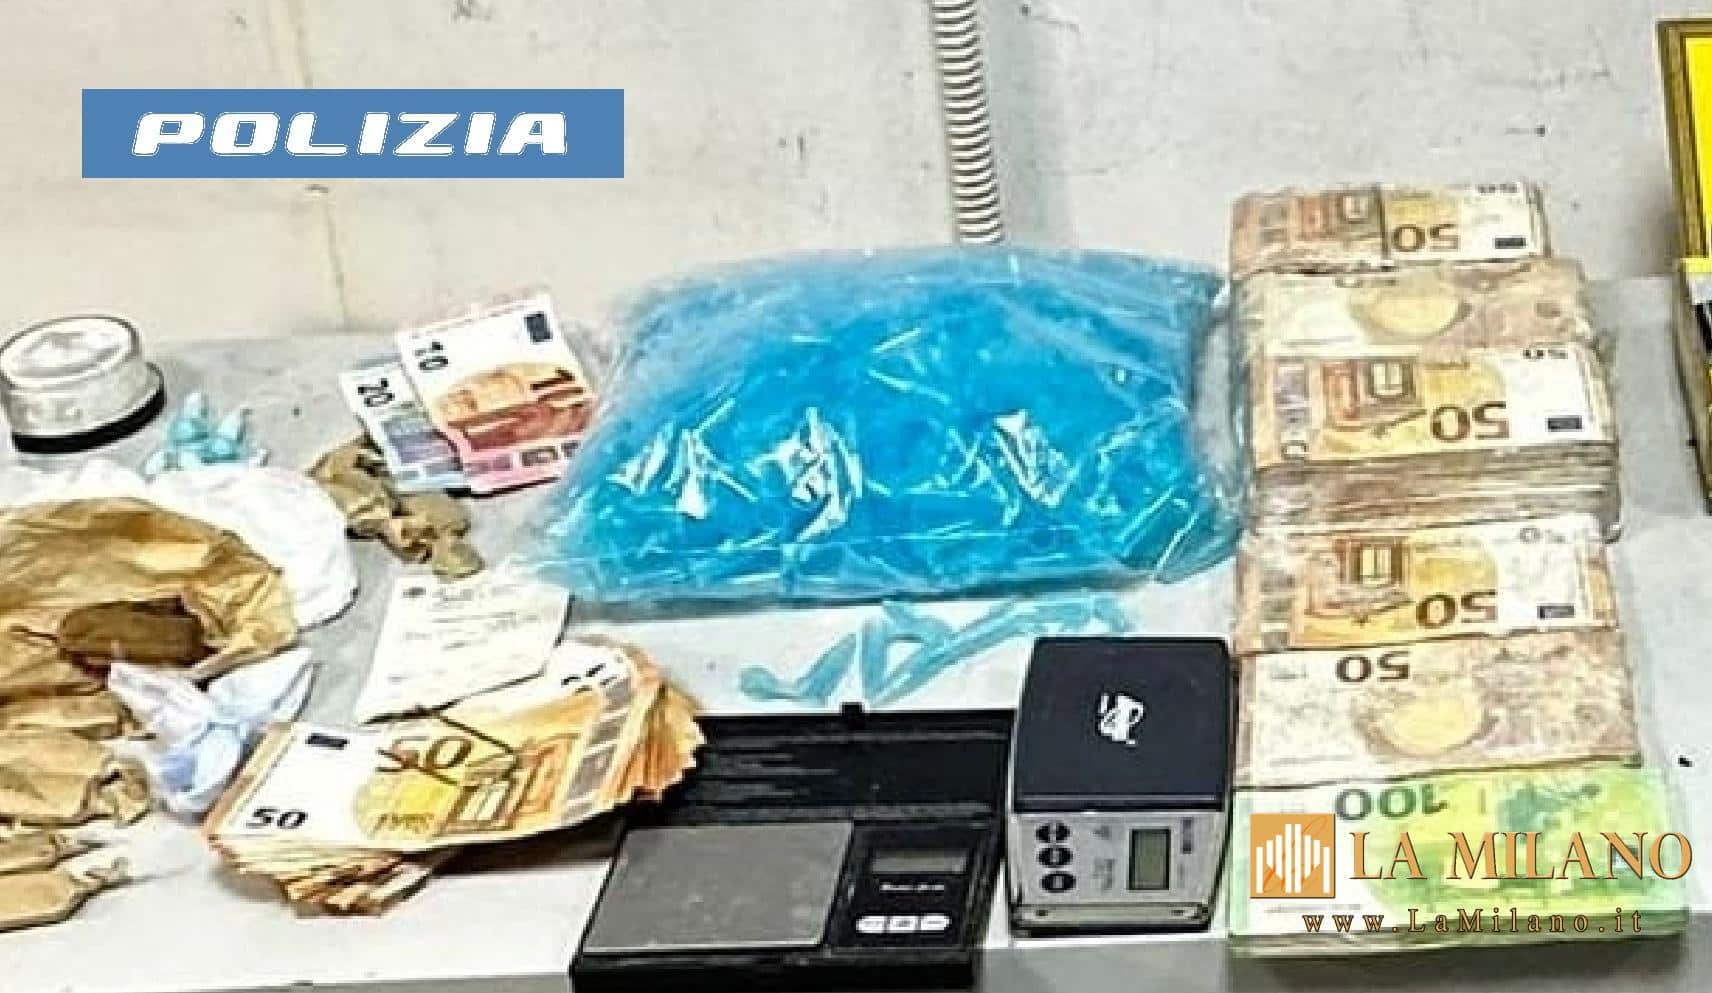 Zona ovest di Napoli: sorpreso con droga, pistola, taser, coltelli e circa 100.000 euro in contanti. La Polizia di Stato arresta un 55enne napoletano.